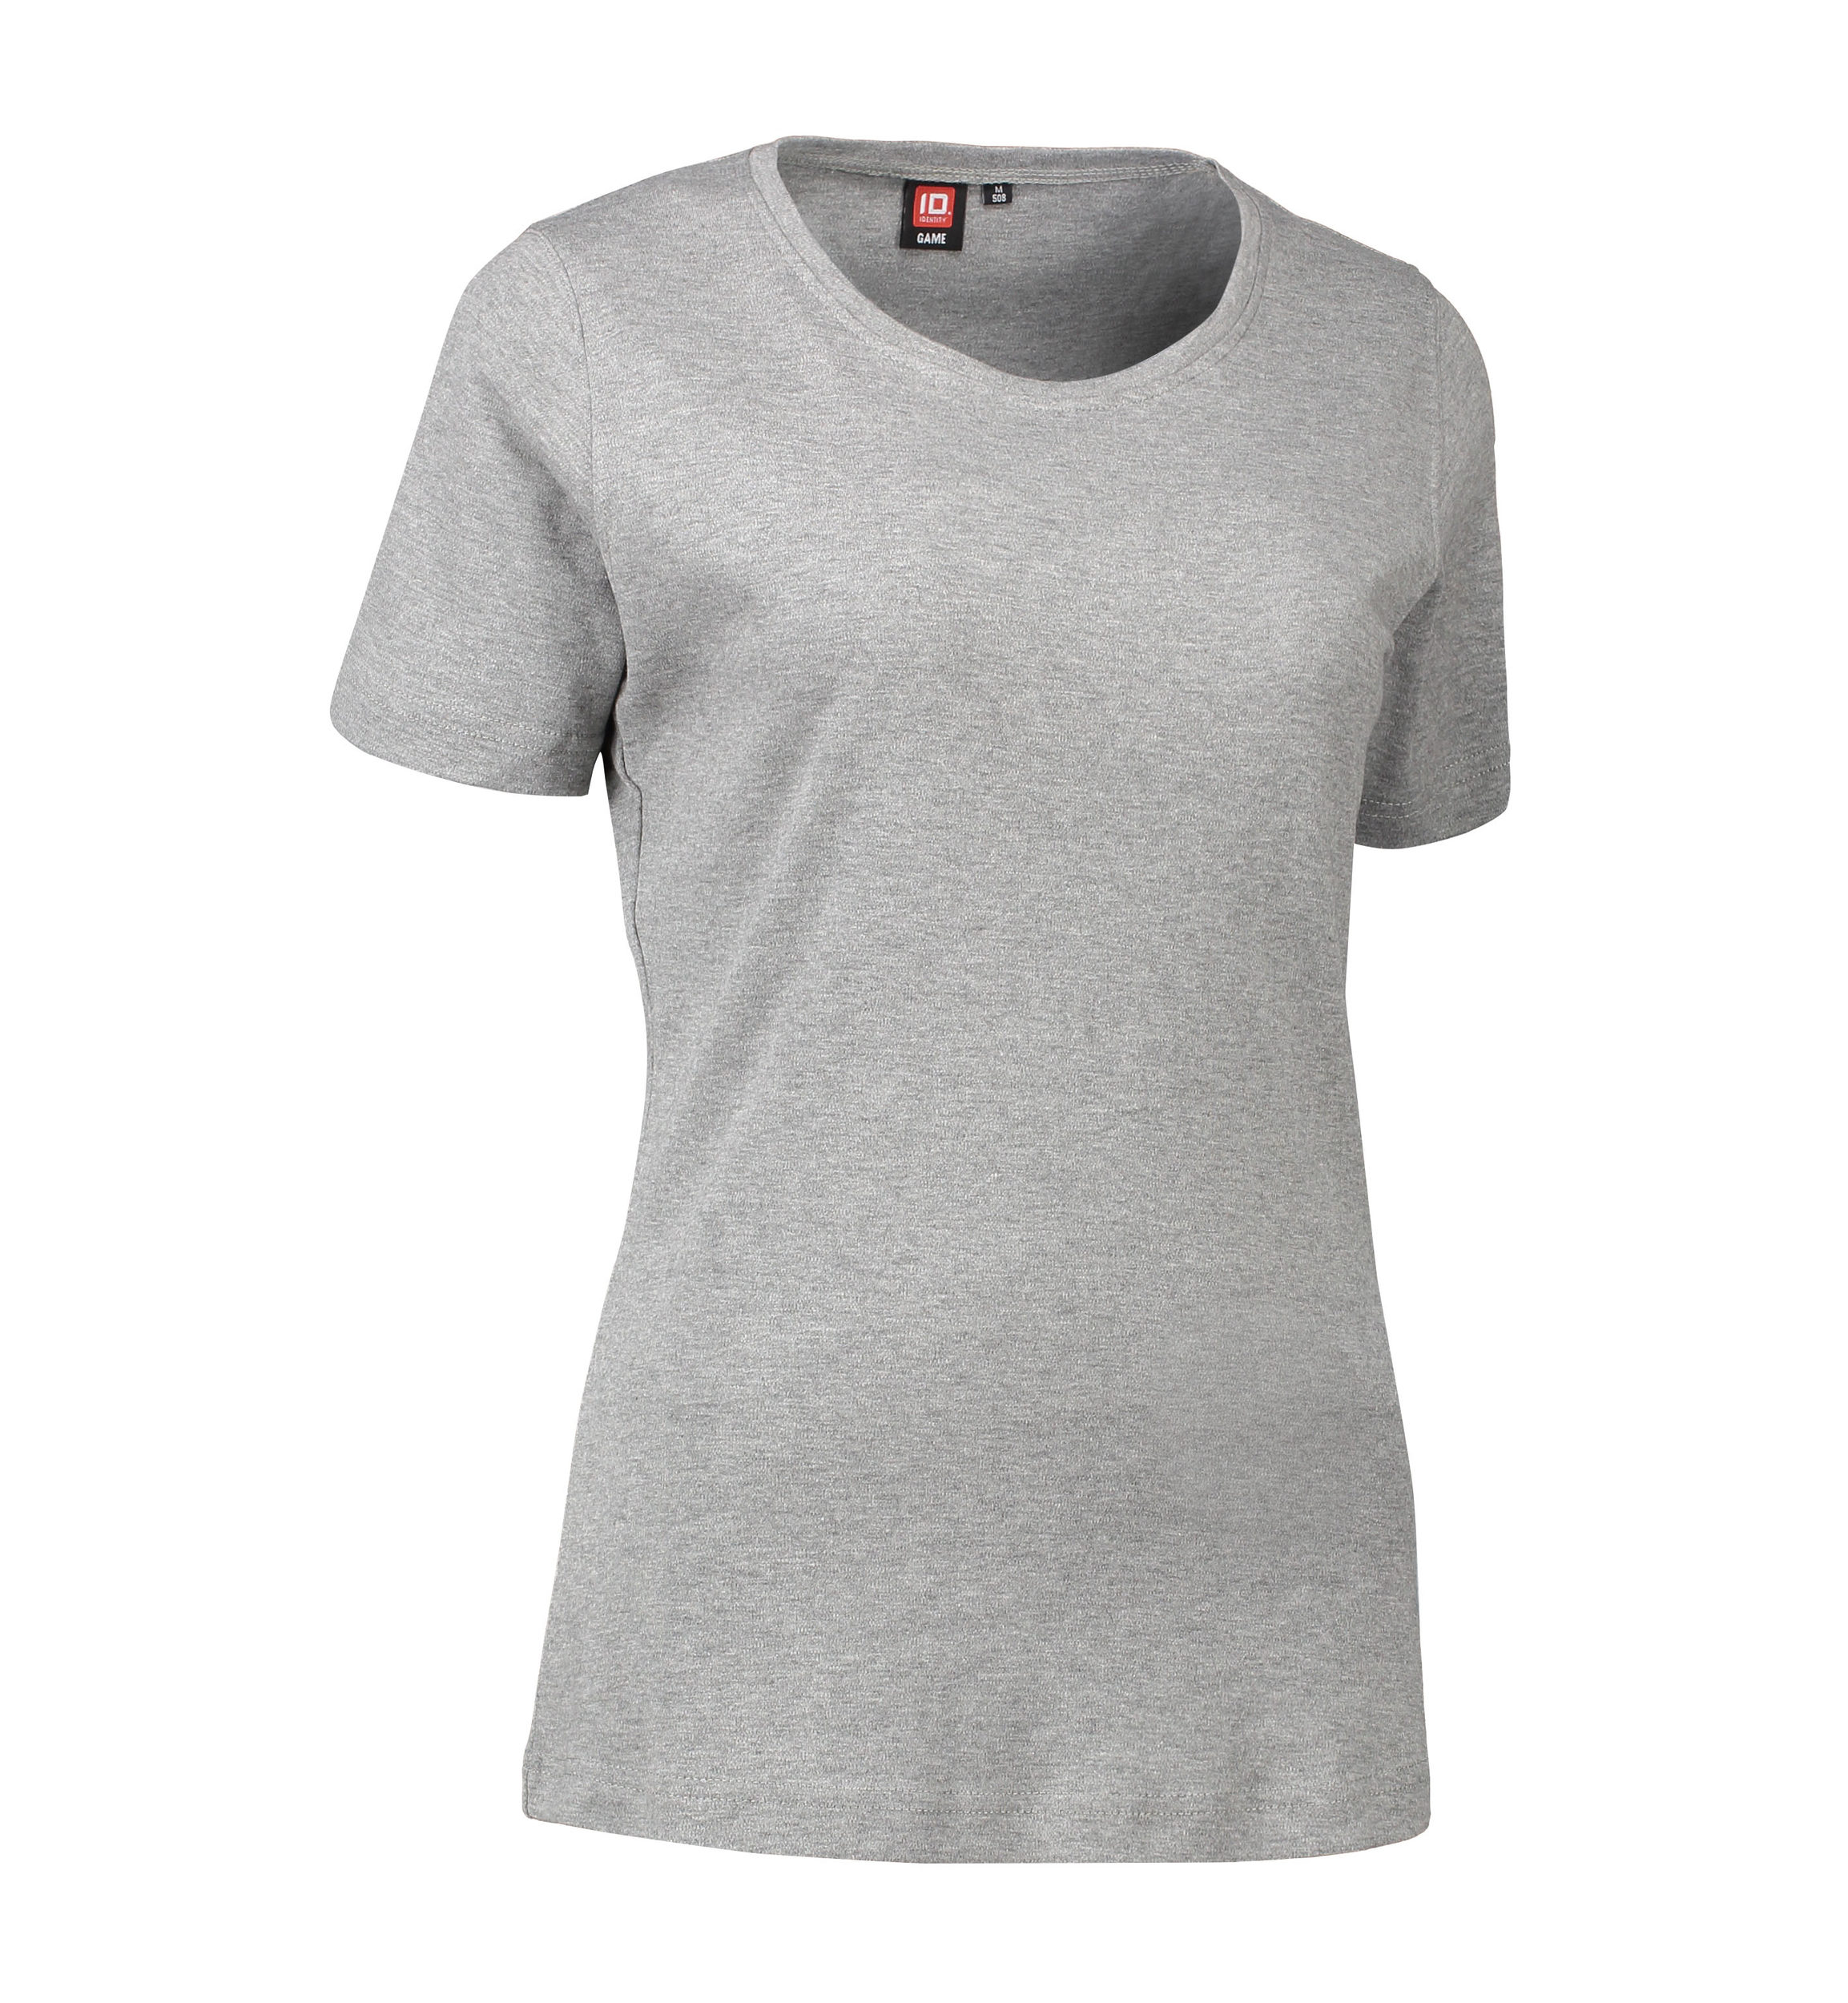 Billede af Dame t-shirt med rund hals i grå - 2XL hos Sygeplejebutikken.dk